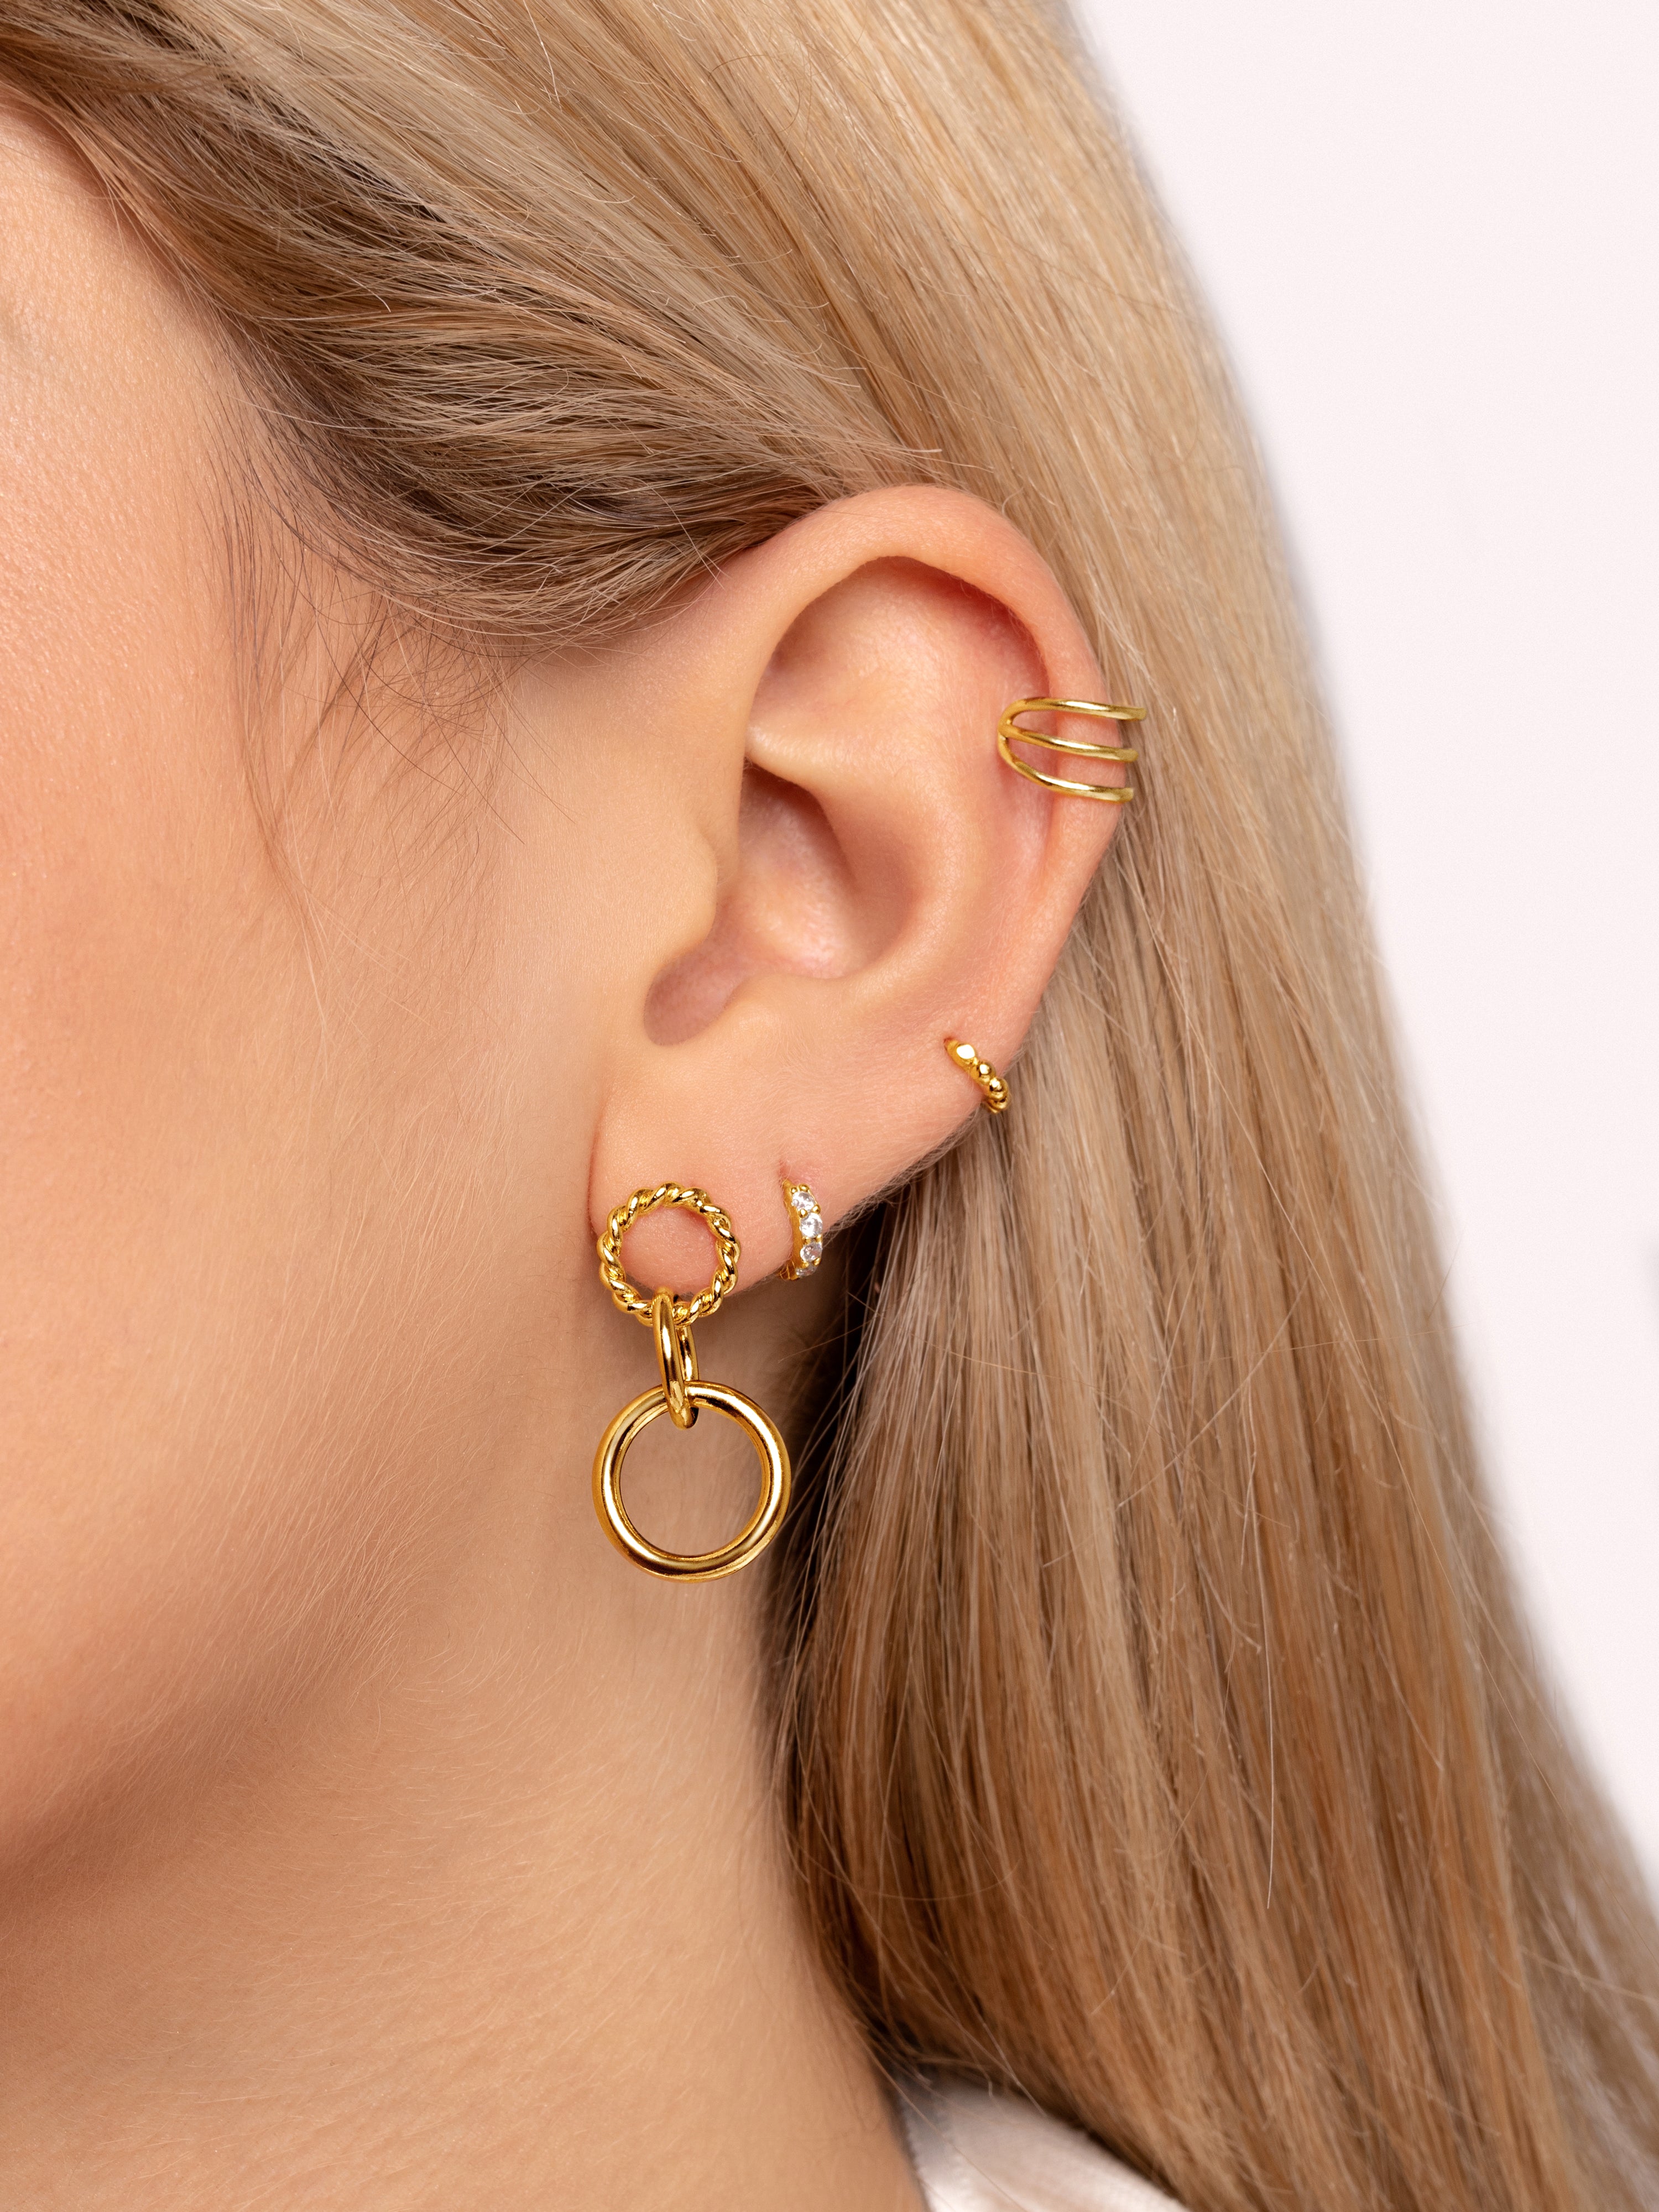 Triple Gold Ear Cuff Single Earring